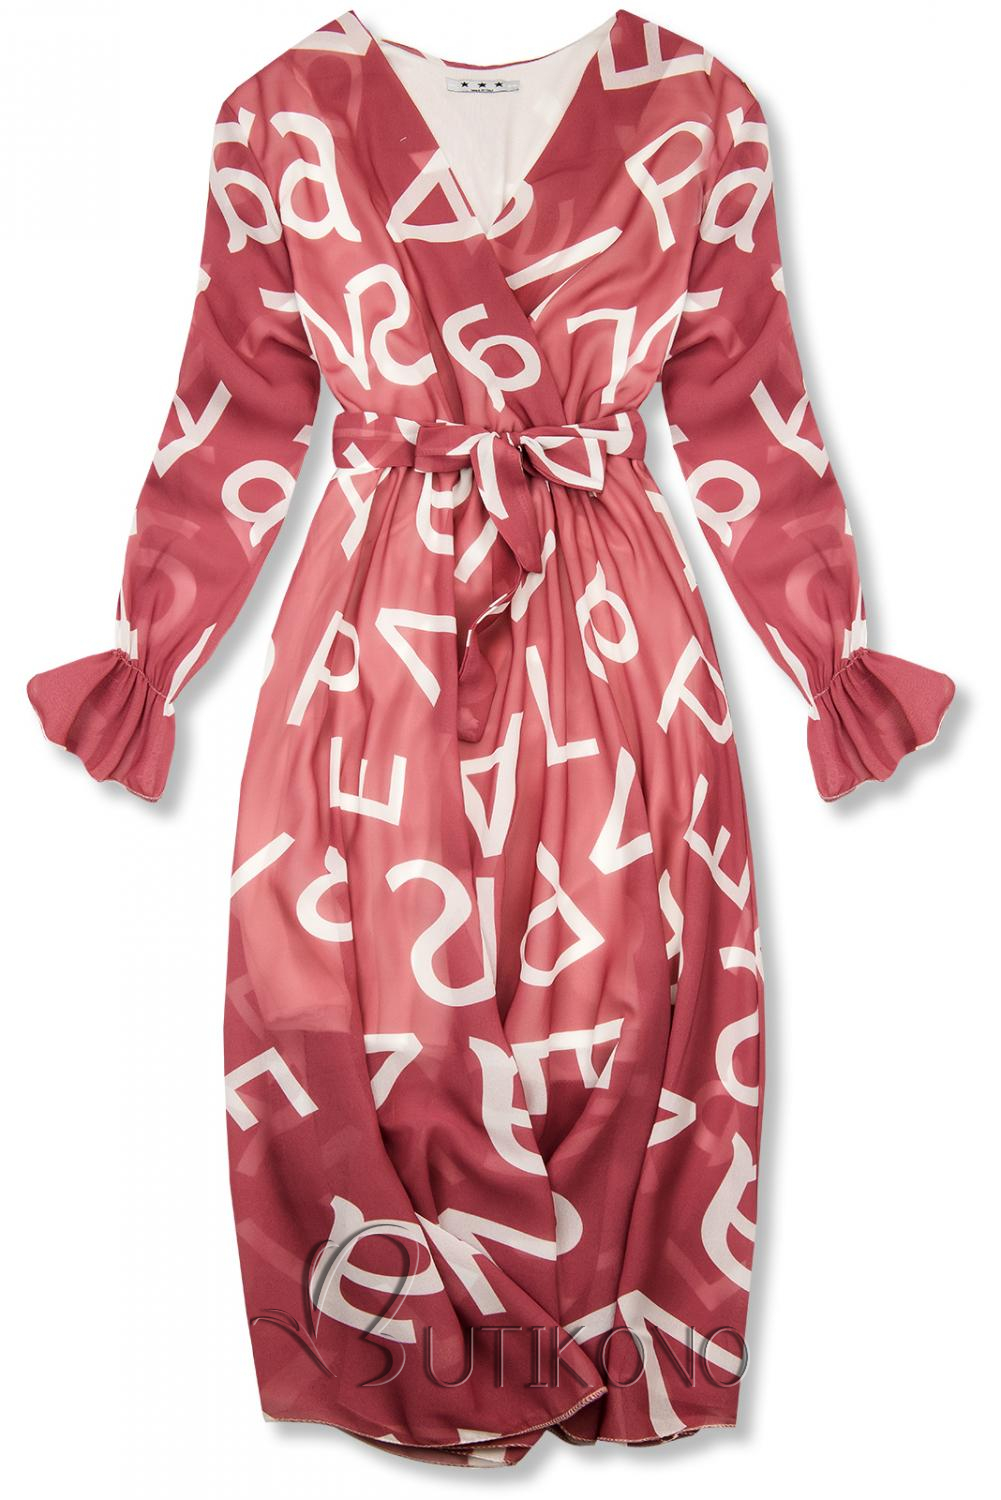 Tmavě růžové midi šaty s potiskem písmen